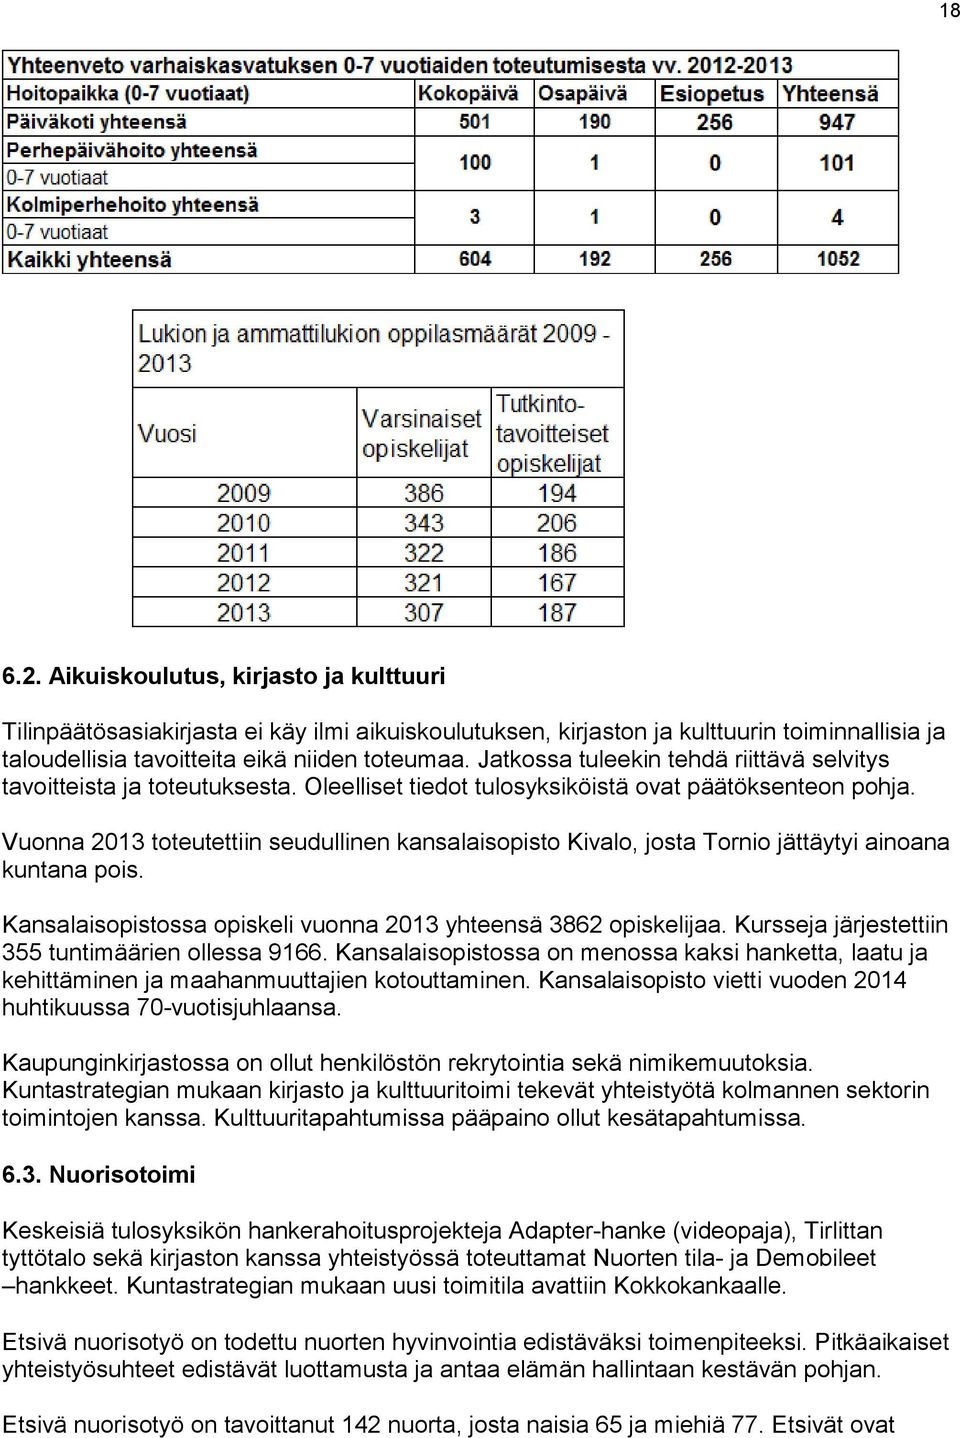 Vuonna 2013 toteutettiin seudullinen kansalaisopisto Kivalo, josta Tornio jättäytyi ainoana kuntana pois. Kansalaisopistossa opiskeli vuonna 2013 yhteensä 3862 opiskelijaa.